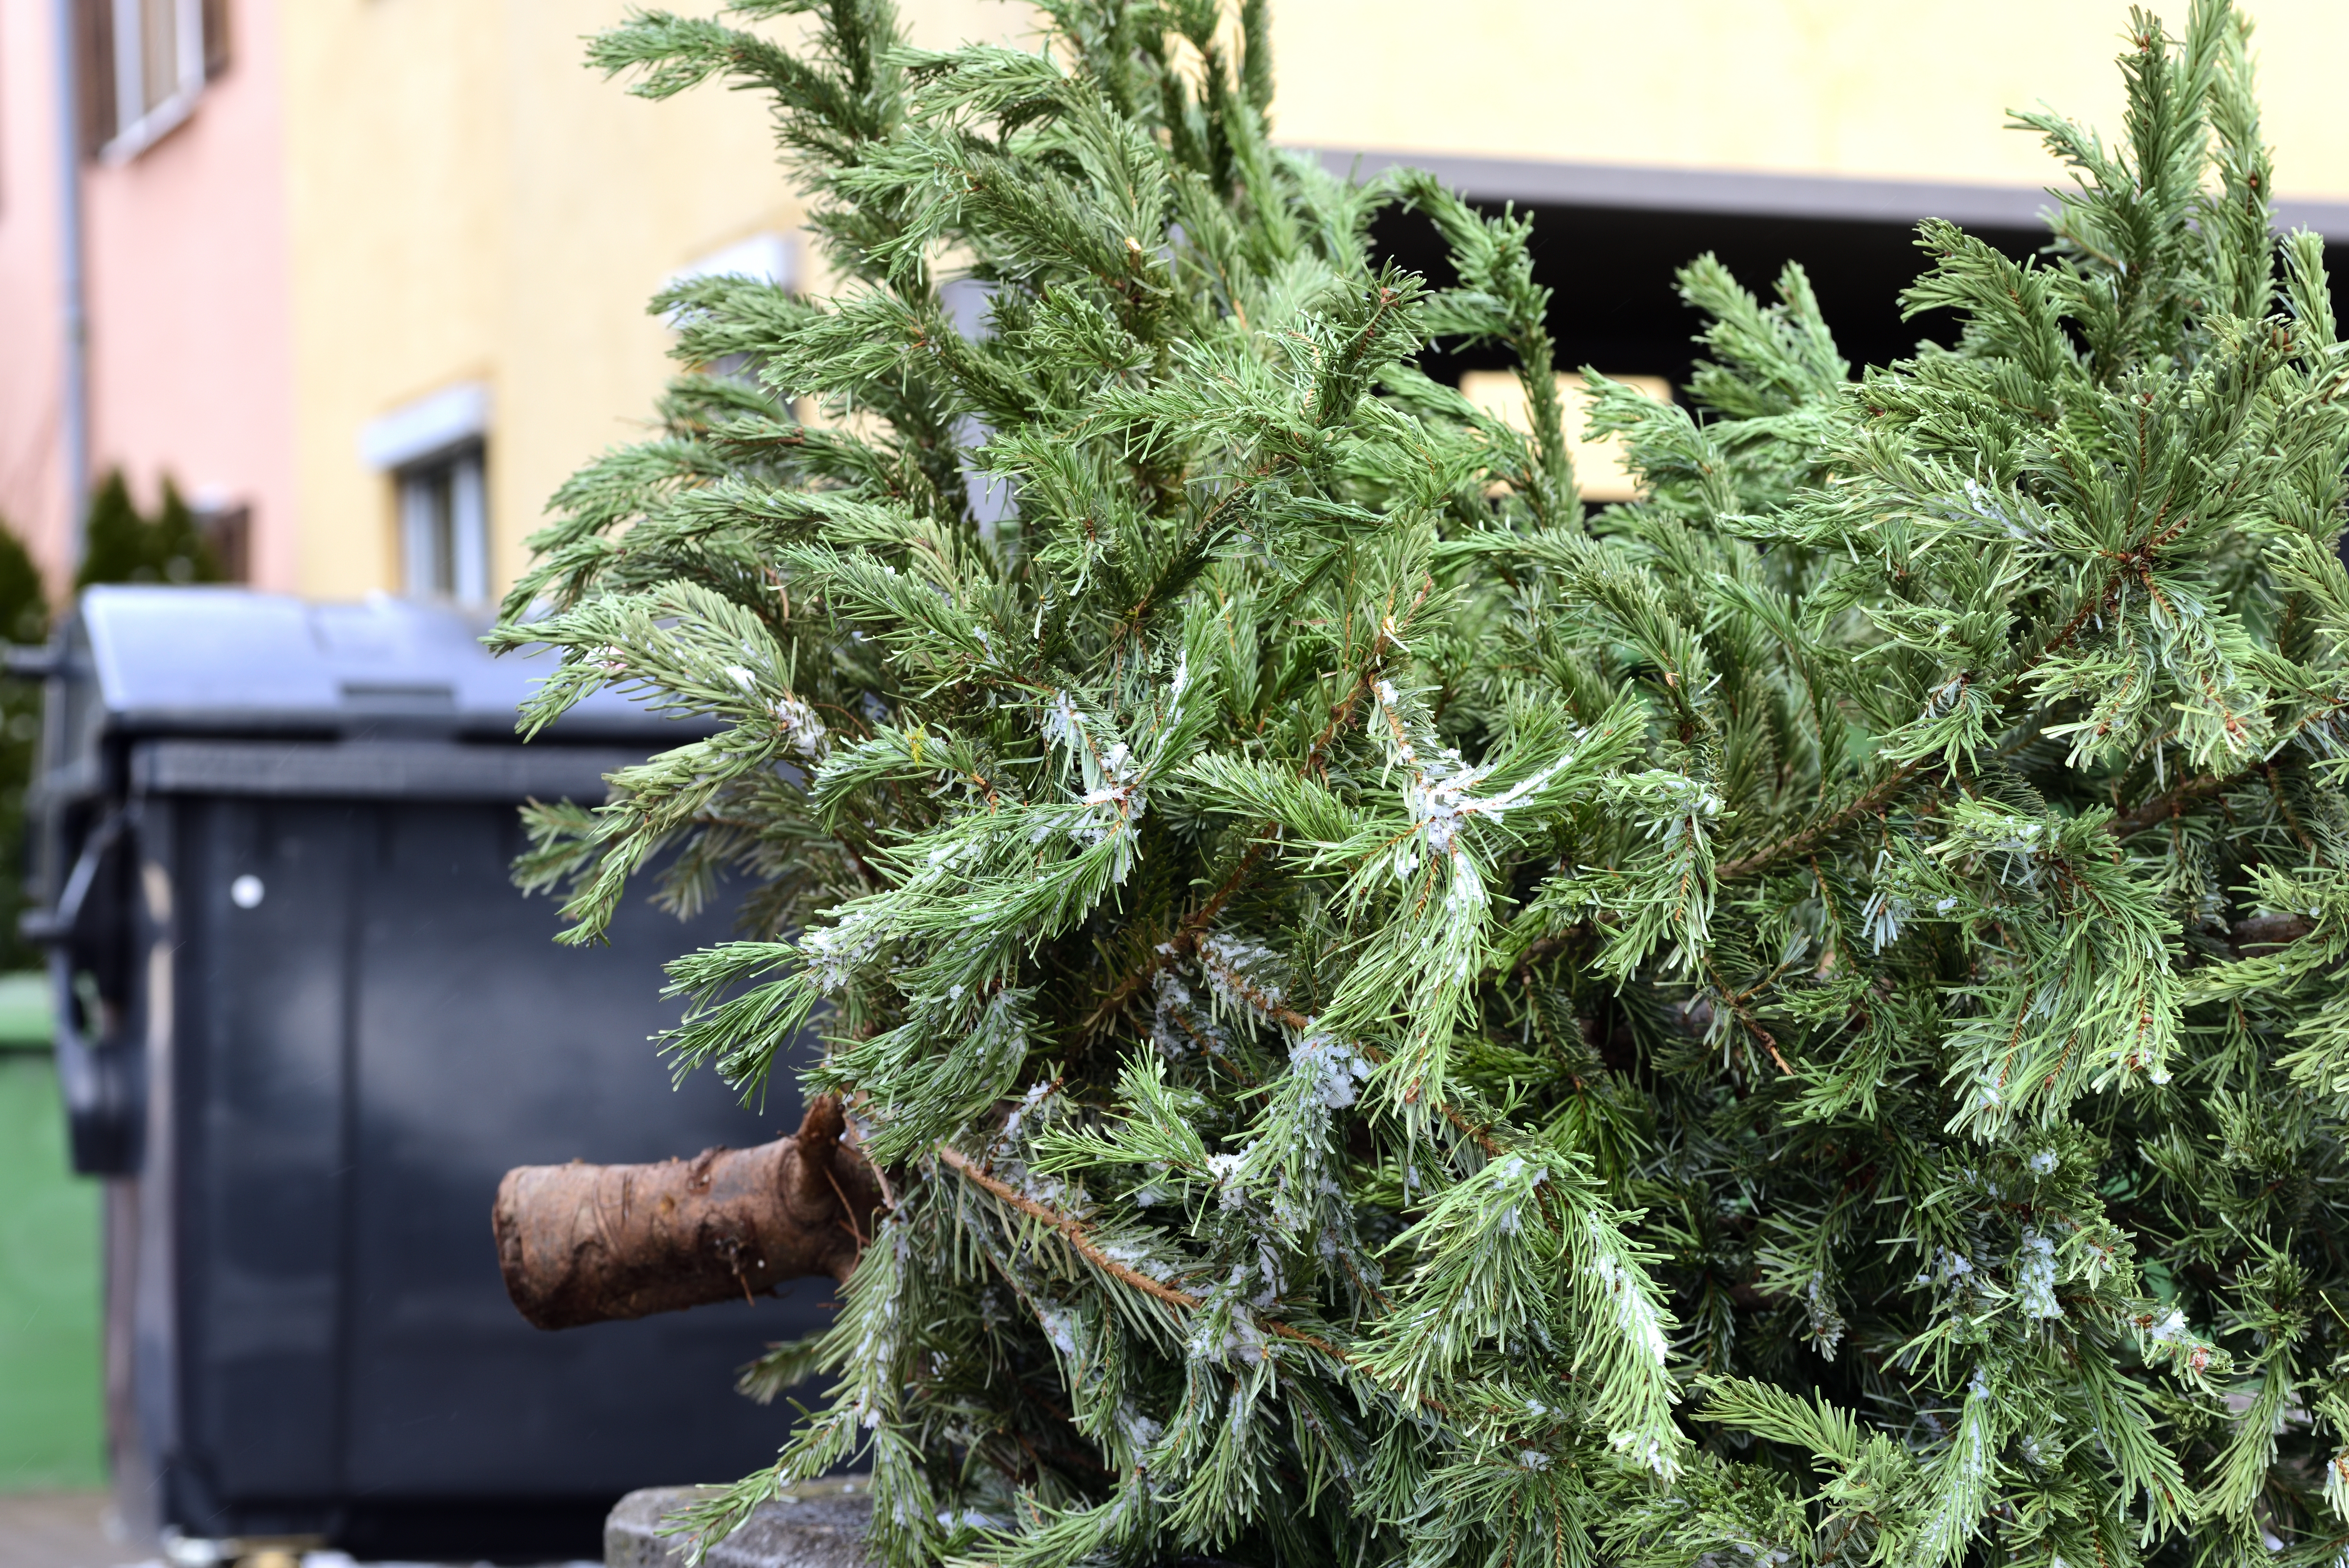 Víte, co s odstrojenými vánočními stromky? Odkládejte je ke svým odpadovým nádobám